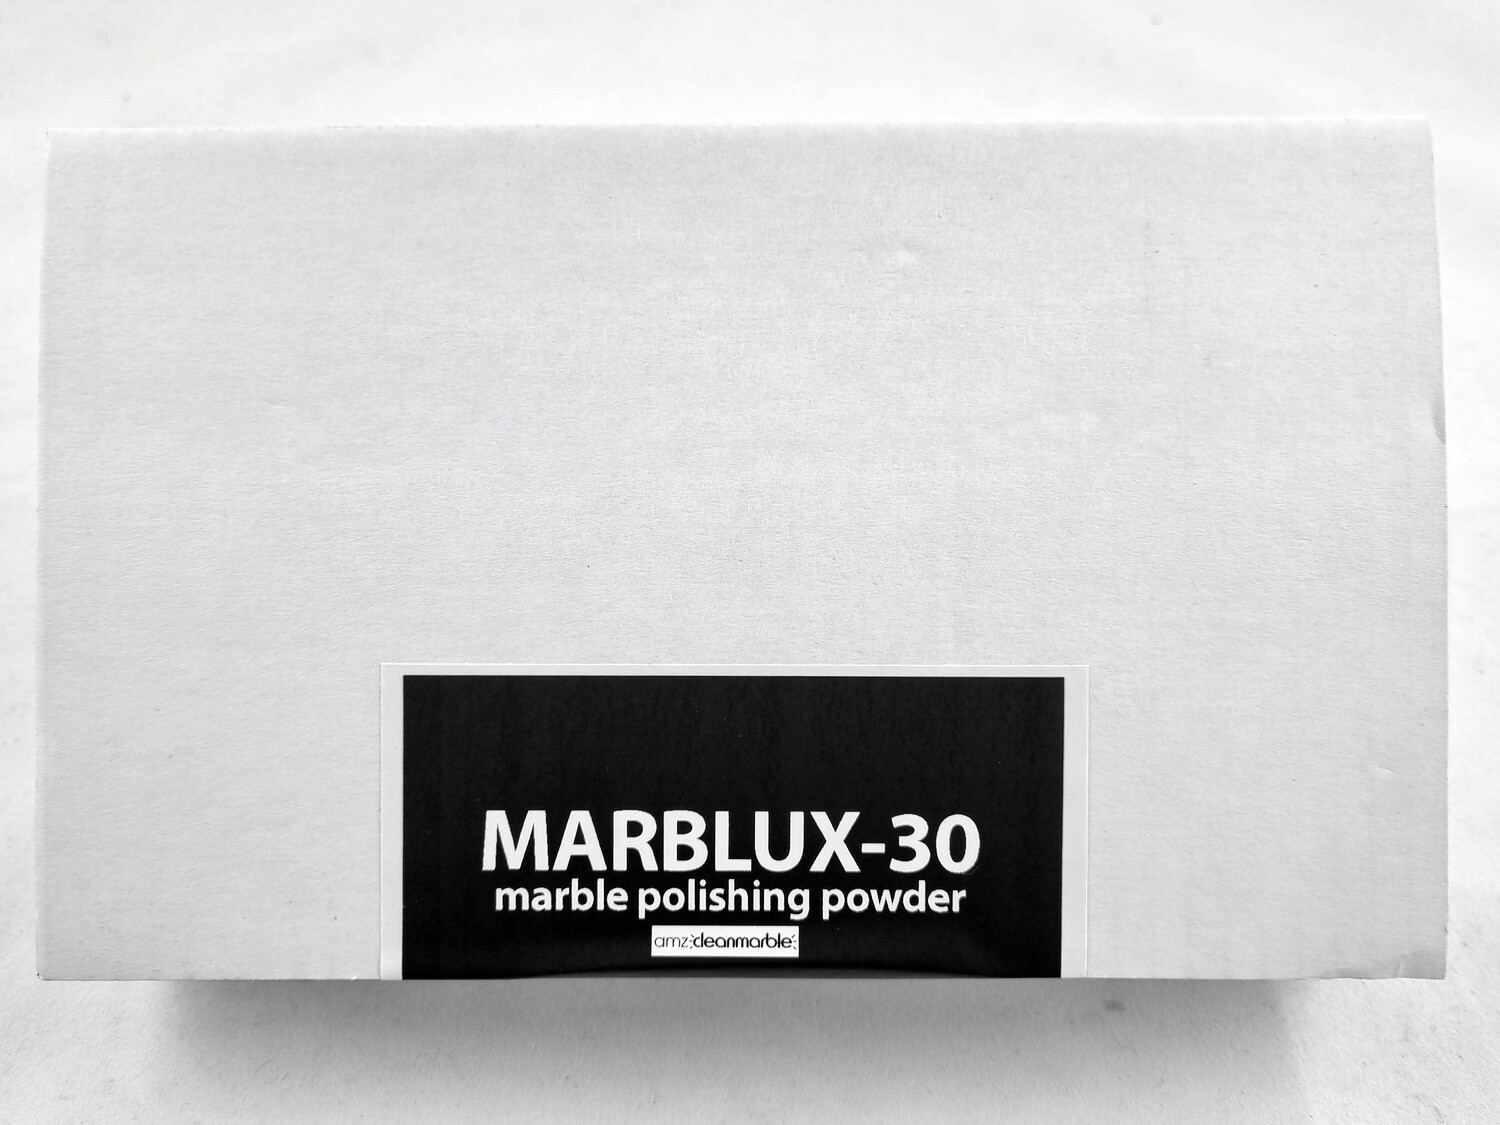 MARBLUX-30 marble polishing powder